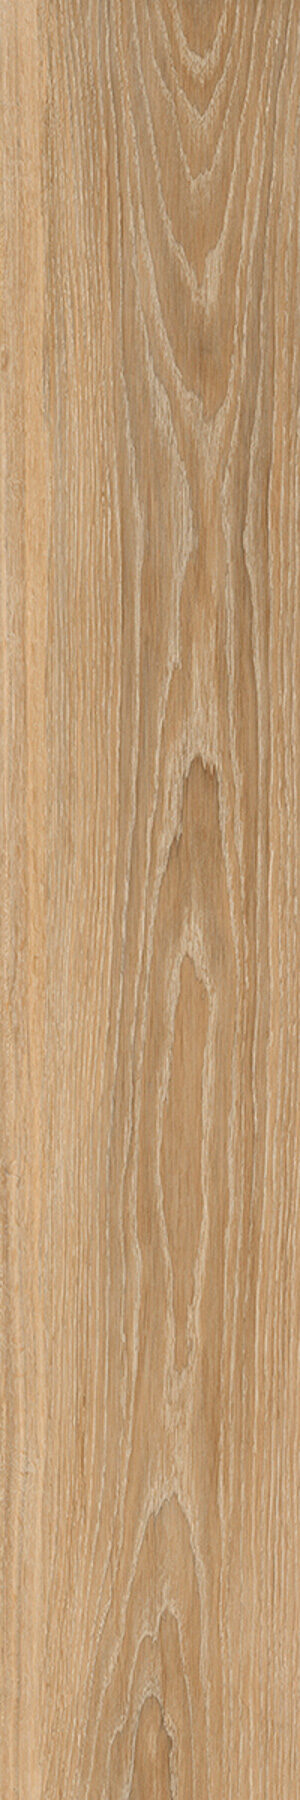 woodbreak oak 20x120 1 rotated 1